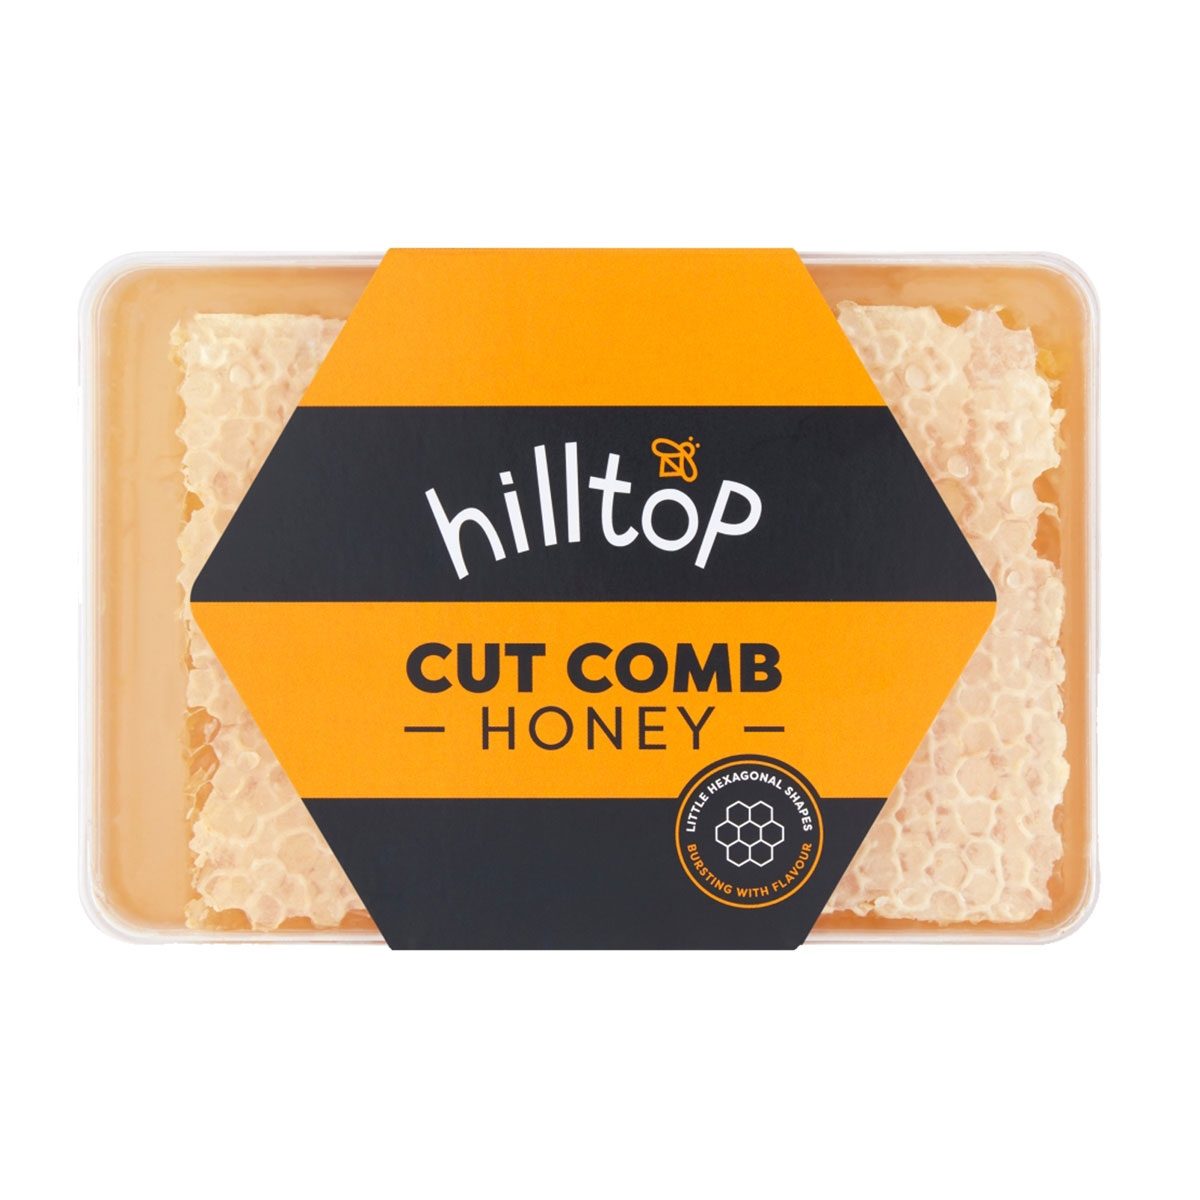 Cut-Comb Honey